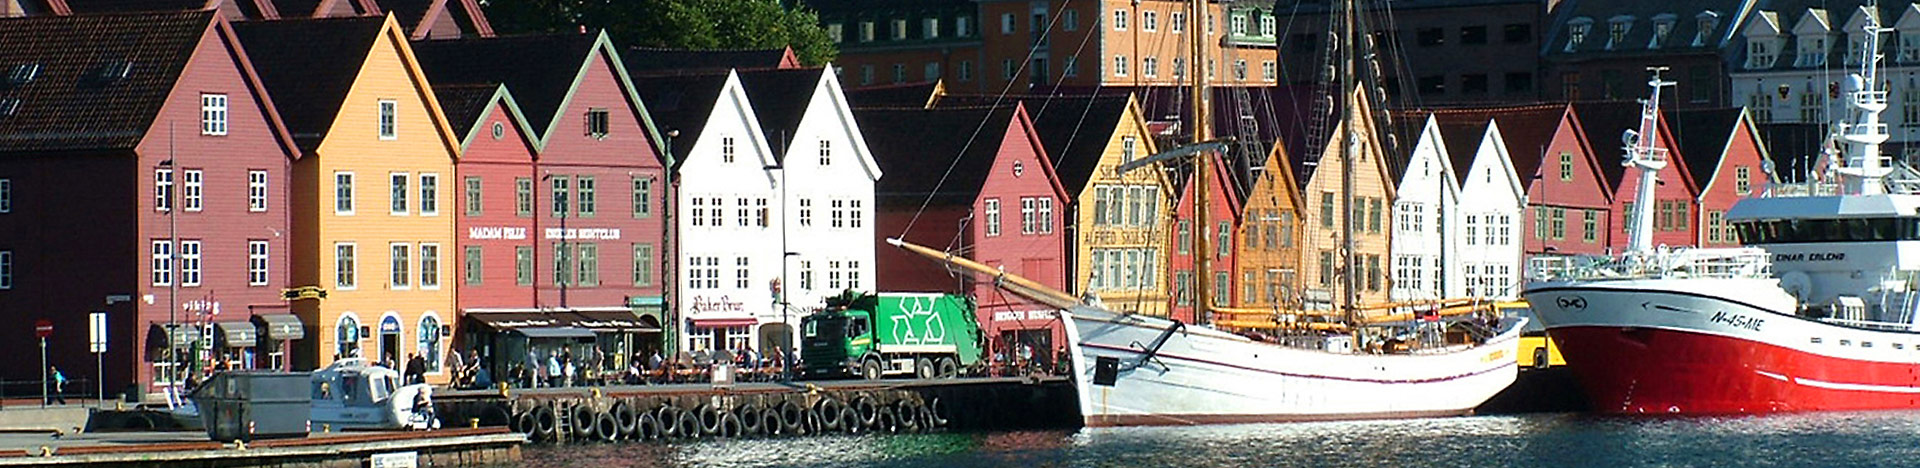 Hanseviertel Bryggen in Bergen